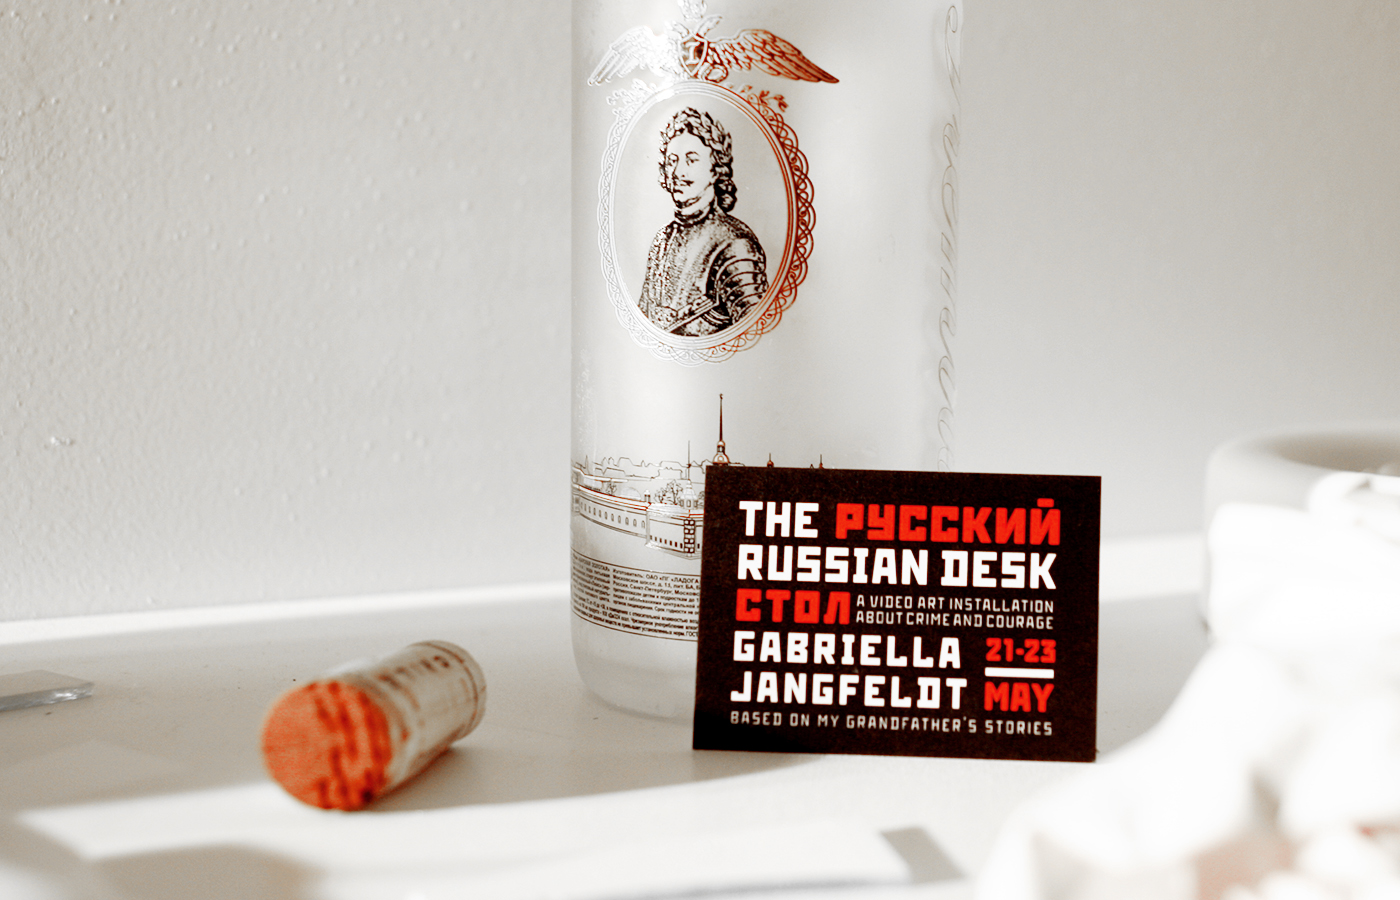 Russian Desk - Gabriella Jangfeldt